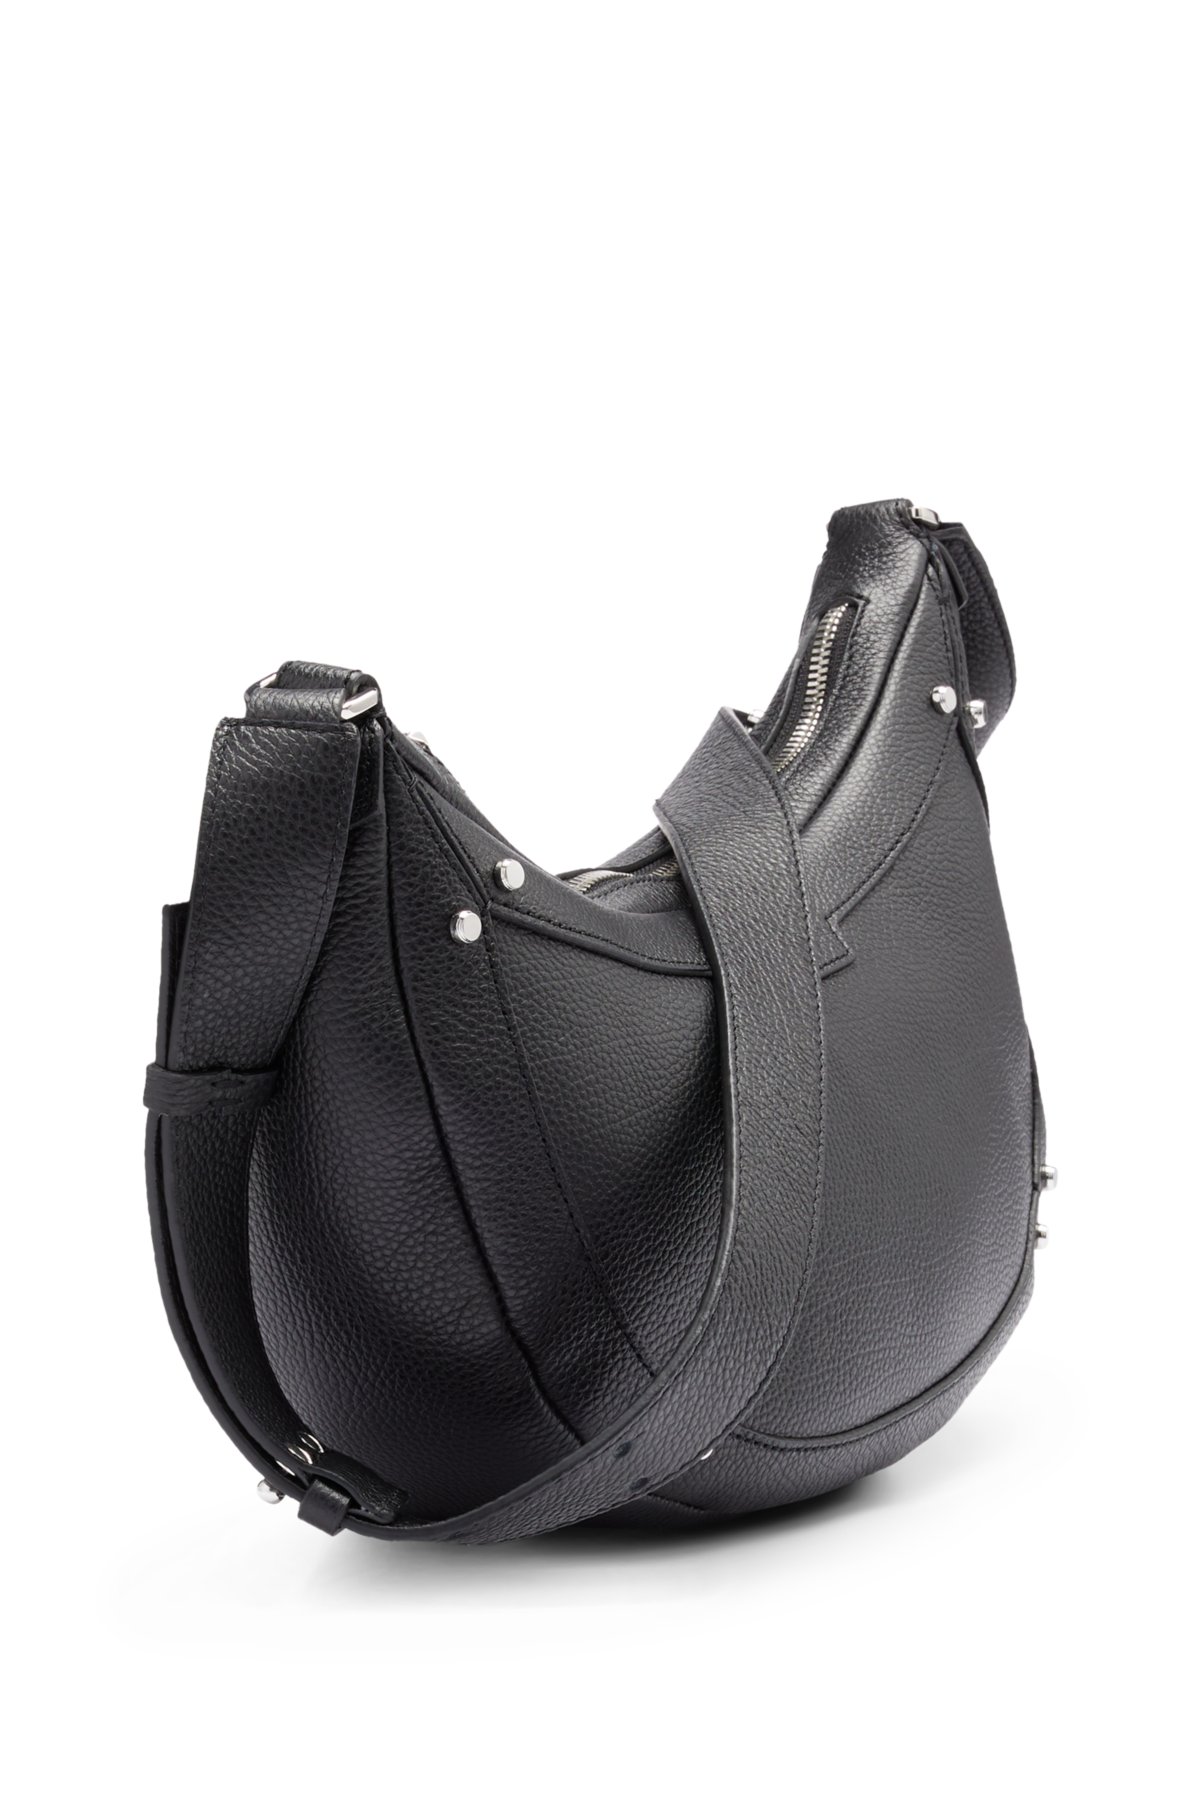 Hobo Shoulder Bag with Big Snap Hook Hardware, Black, One Size